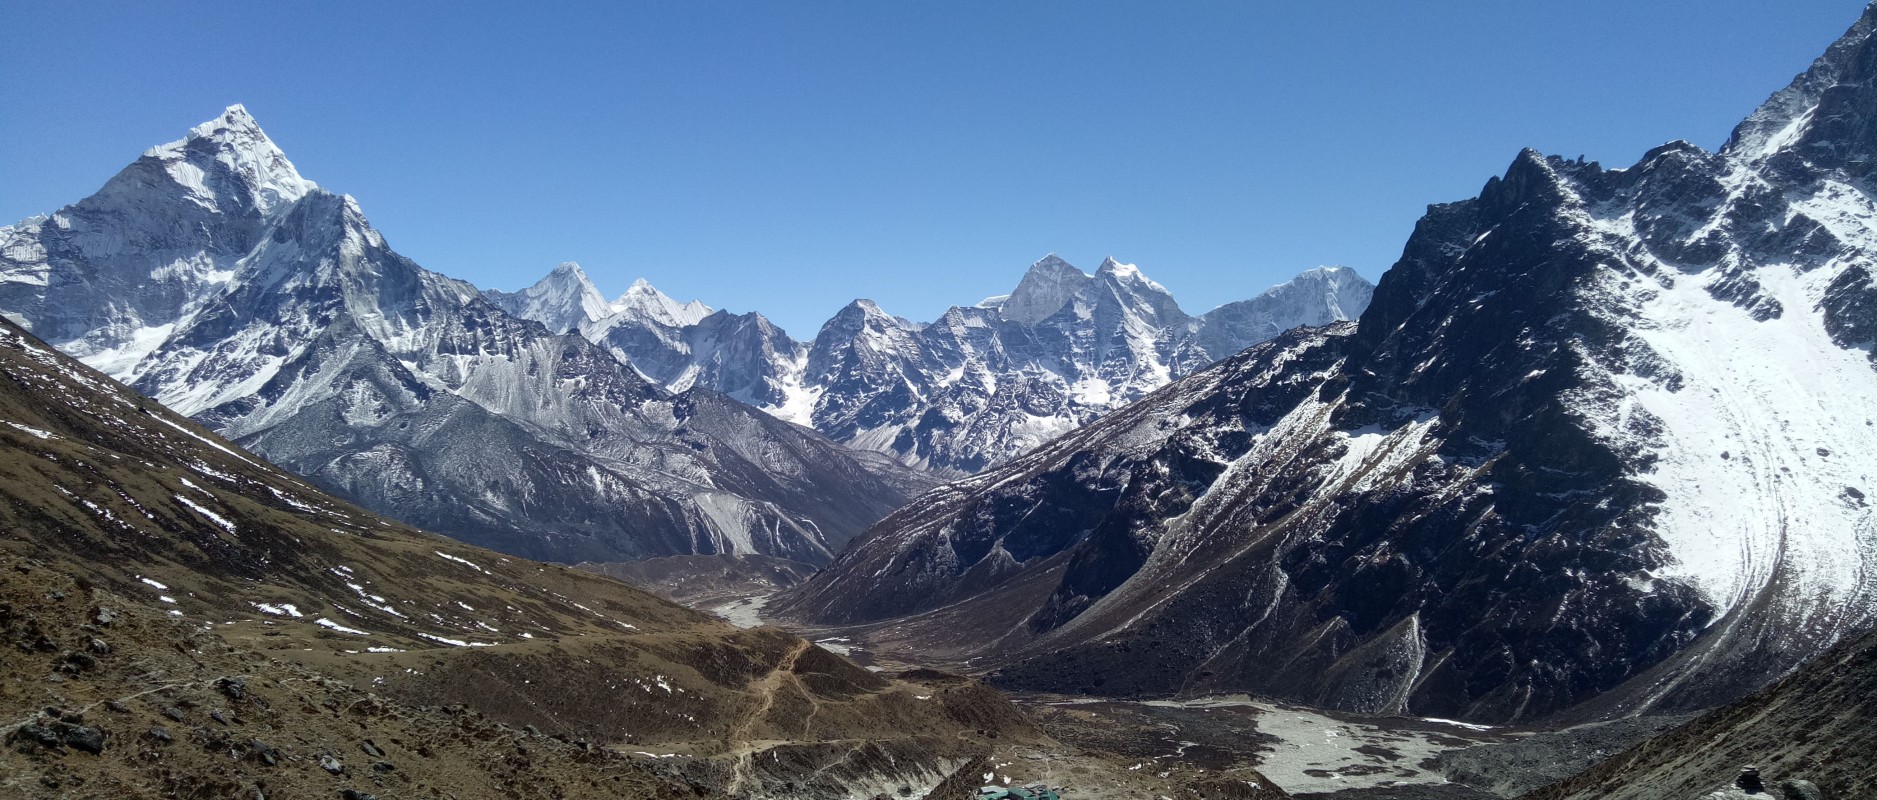 Everest Base Camp Trek Heli Ride Back